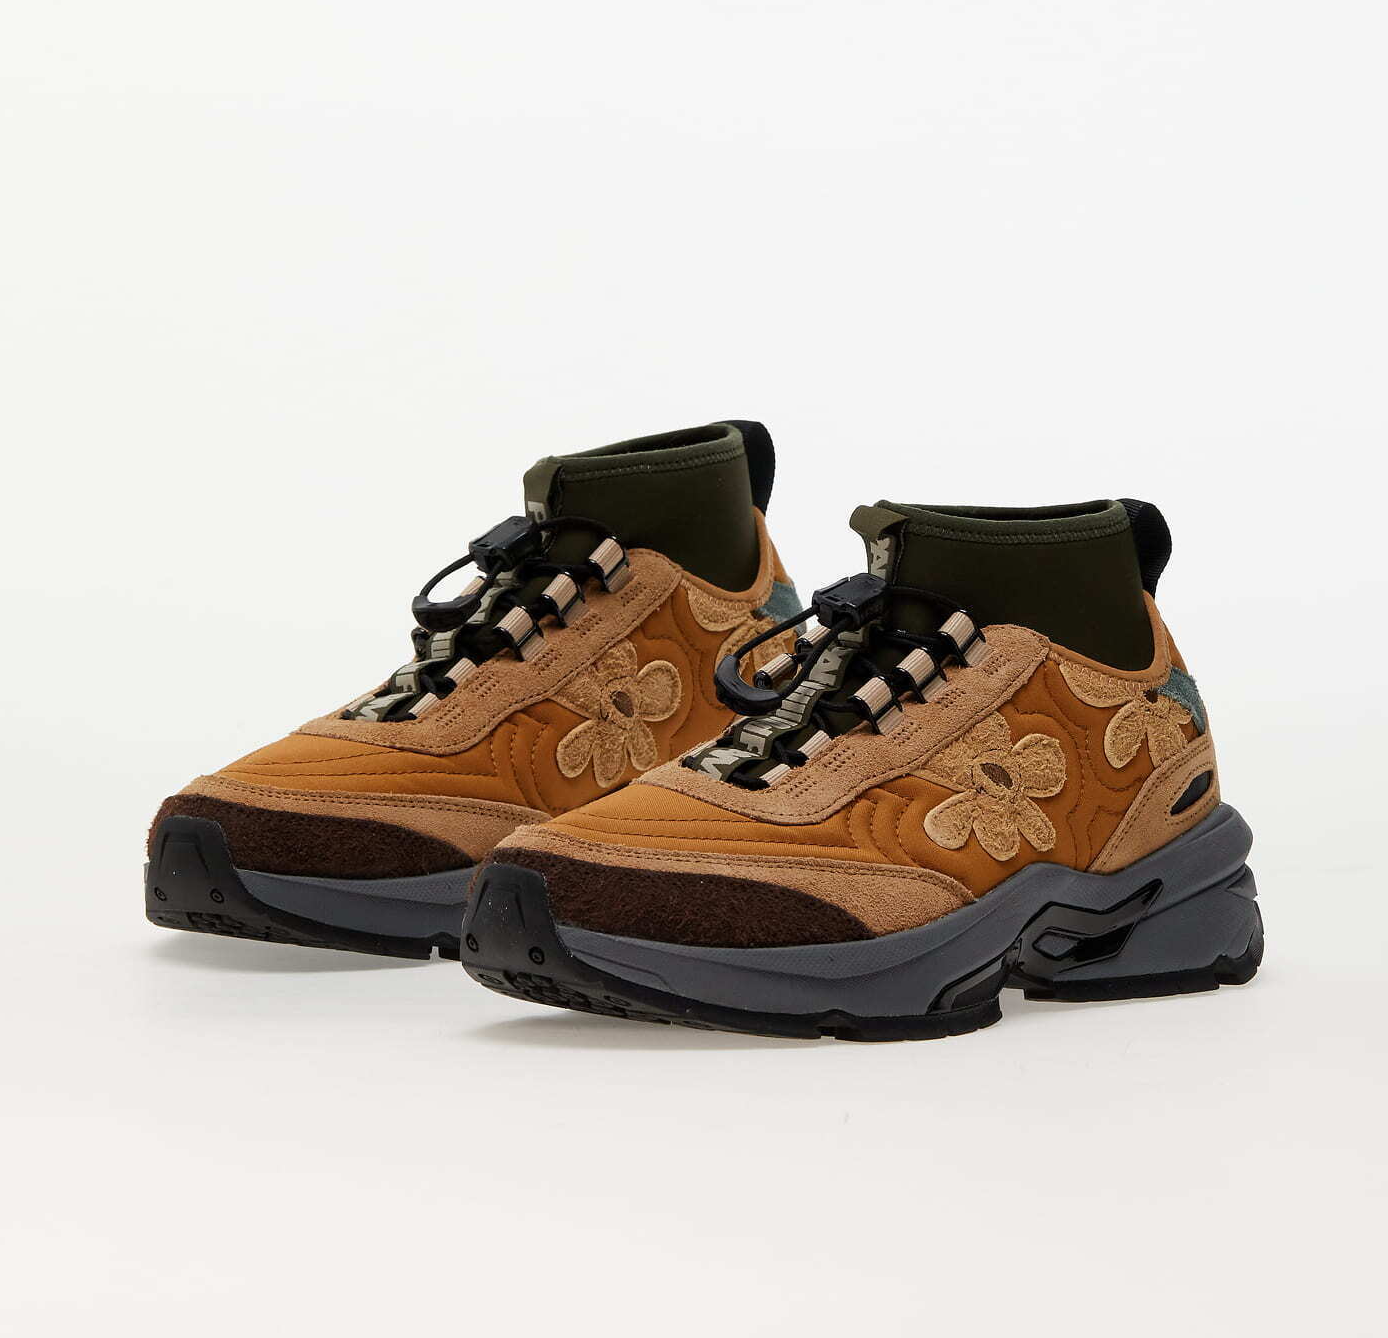 PUMA x Perks and Mini Nano 38703701 Boot Sneakers Shoes | eBay